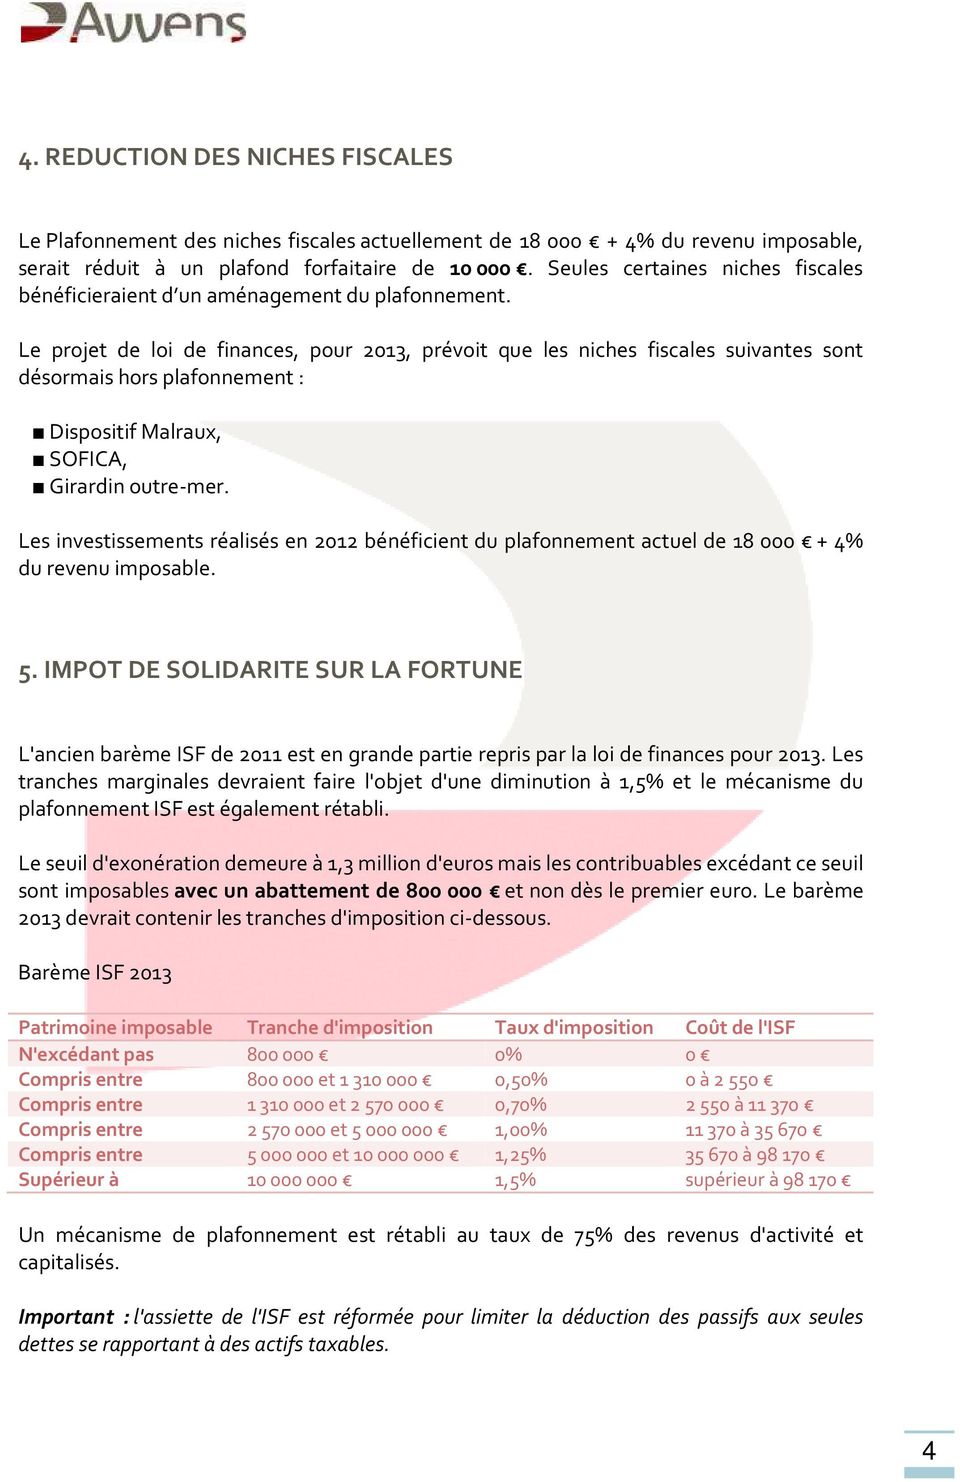 Le projet de loi de finances, pour 2013, prévoit que les niches fiscales suivantes sont désormais hors plafonnement : Dispositif Malraux, SOFICA, Girardin outre-mer.